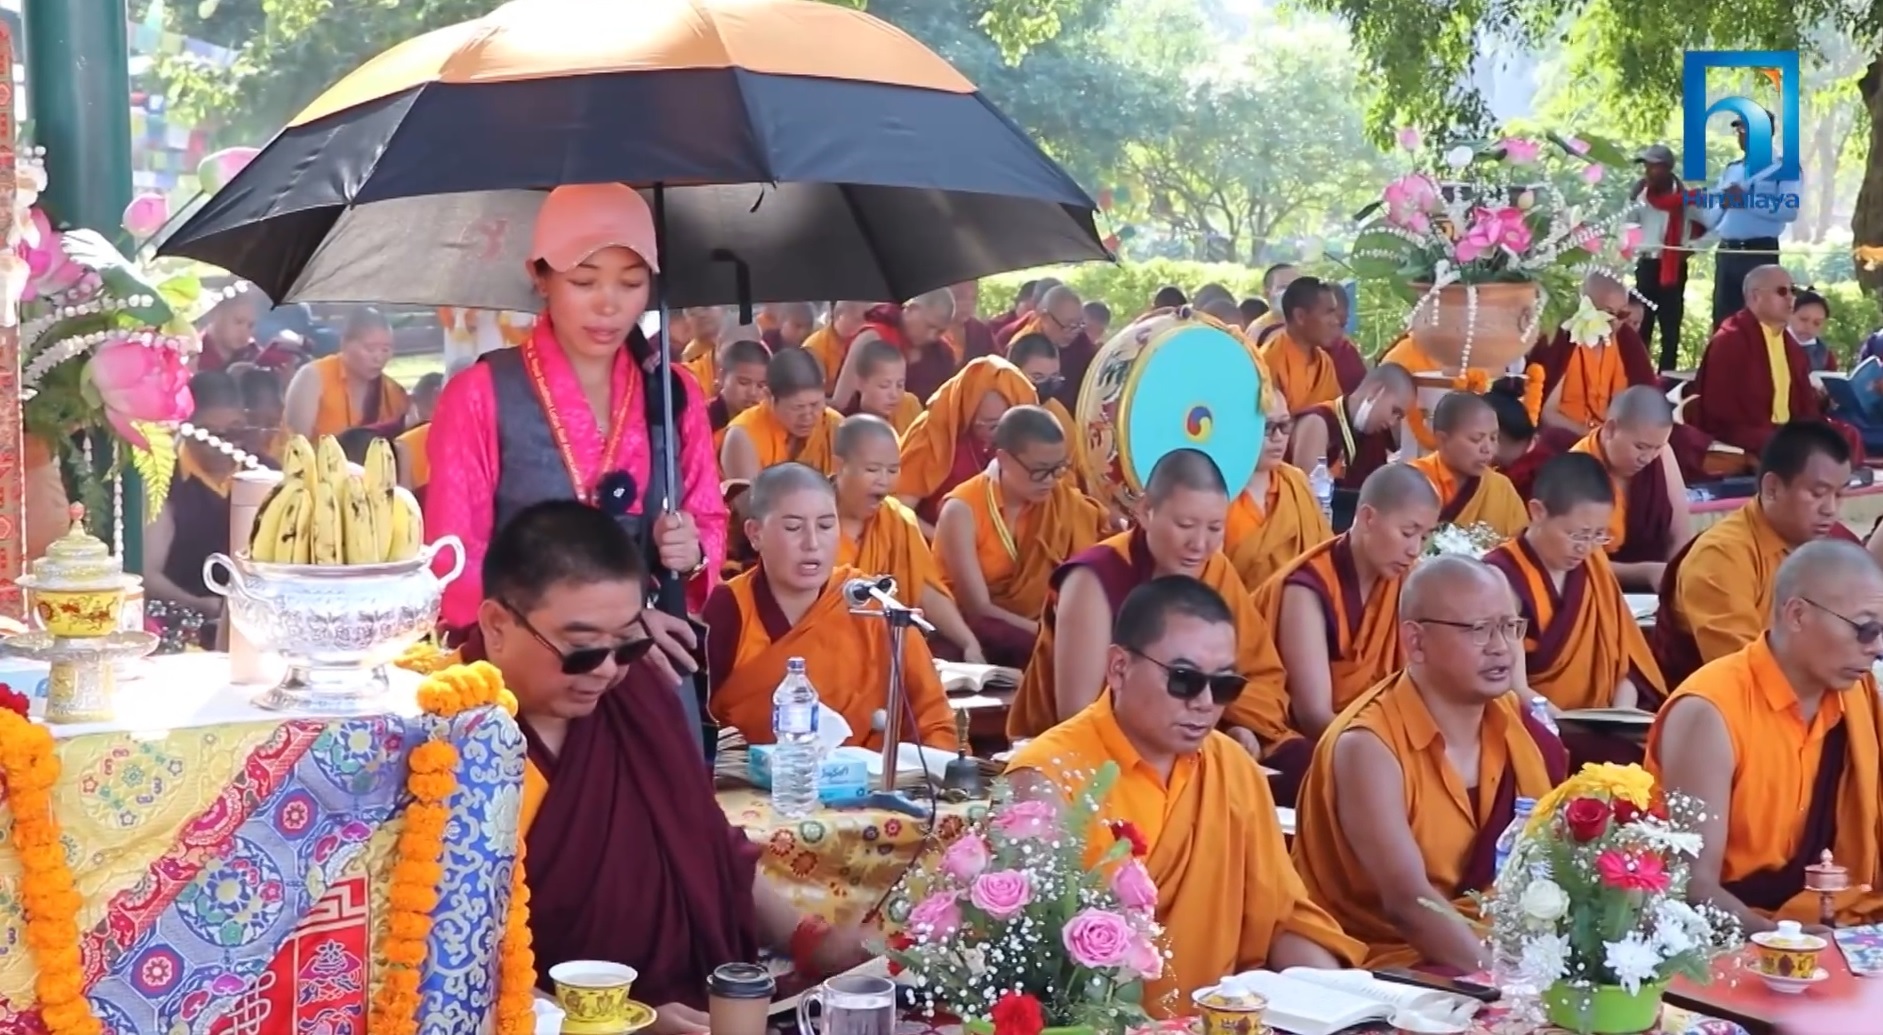 बुद्धजन्मस्थल लुम्बिनीमा विश्व शान्तिका लागि प्राणिधान मोन्लम पूजा शुरु (भिडियो रिपोर्टसहित)